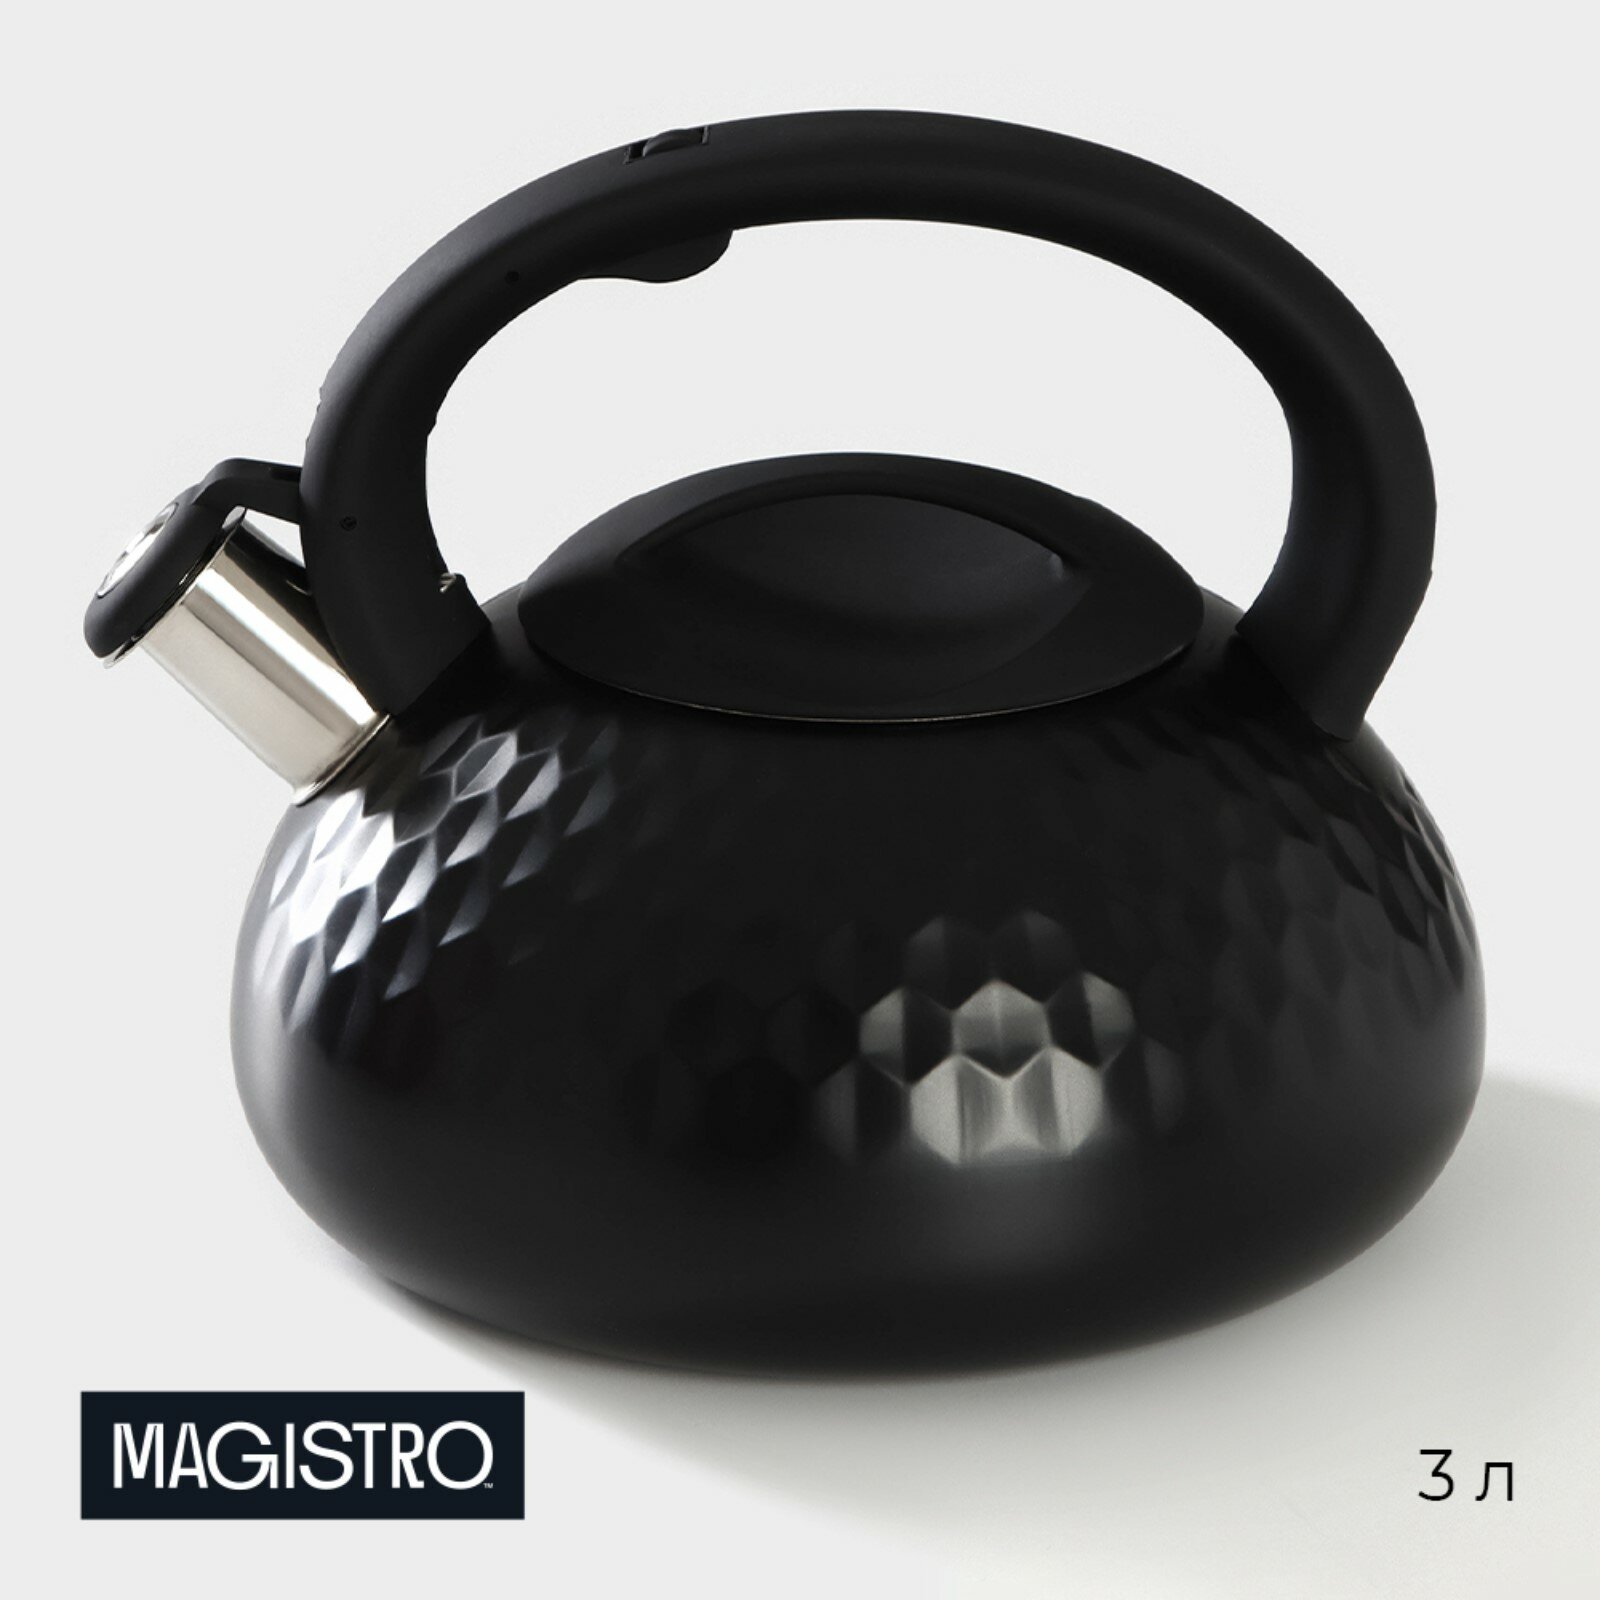 Чайник Magistro Glow, со свистком, индукция, ручка soft-touch, 3 л, цвет черный